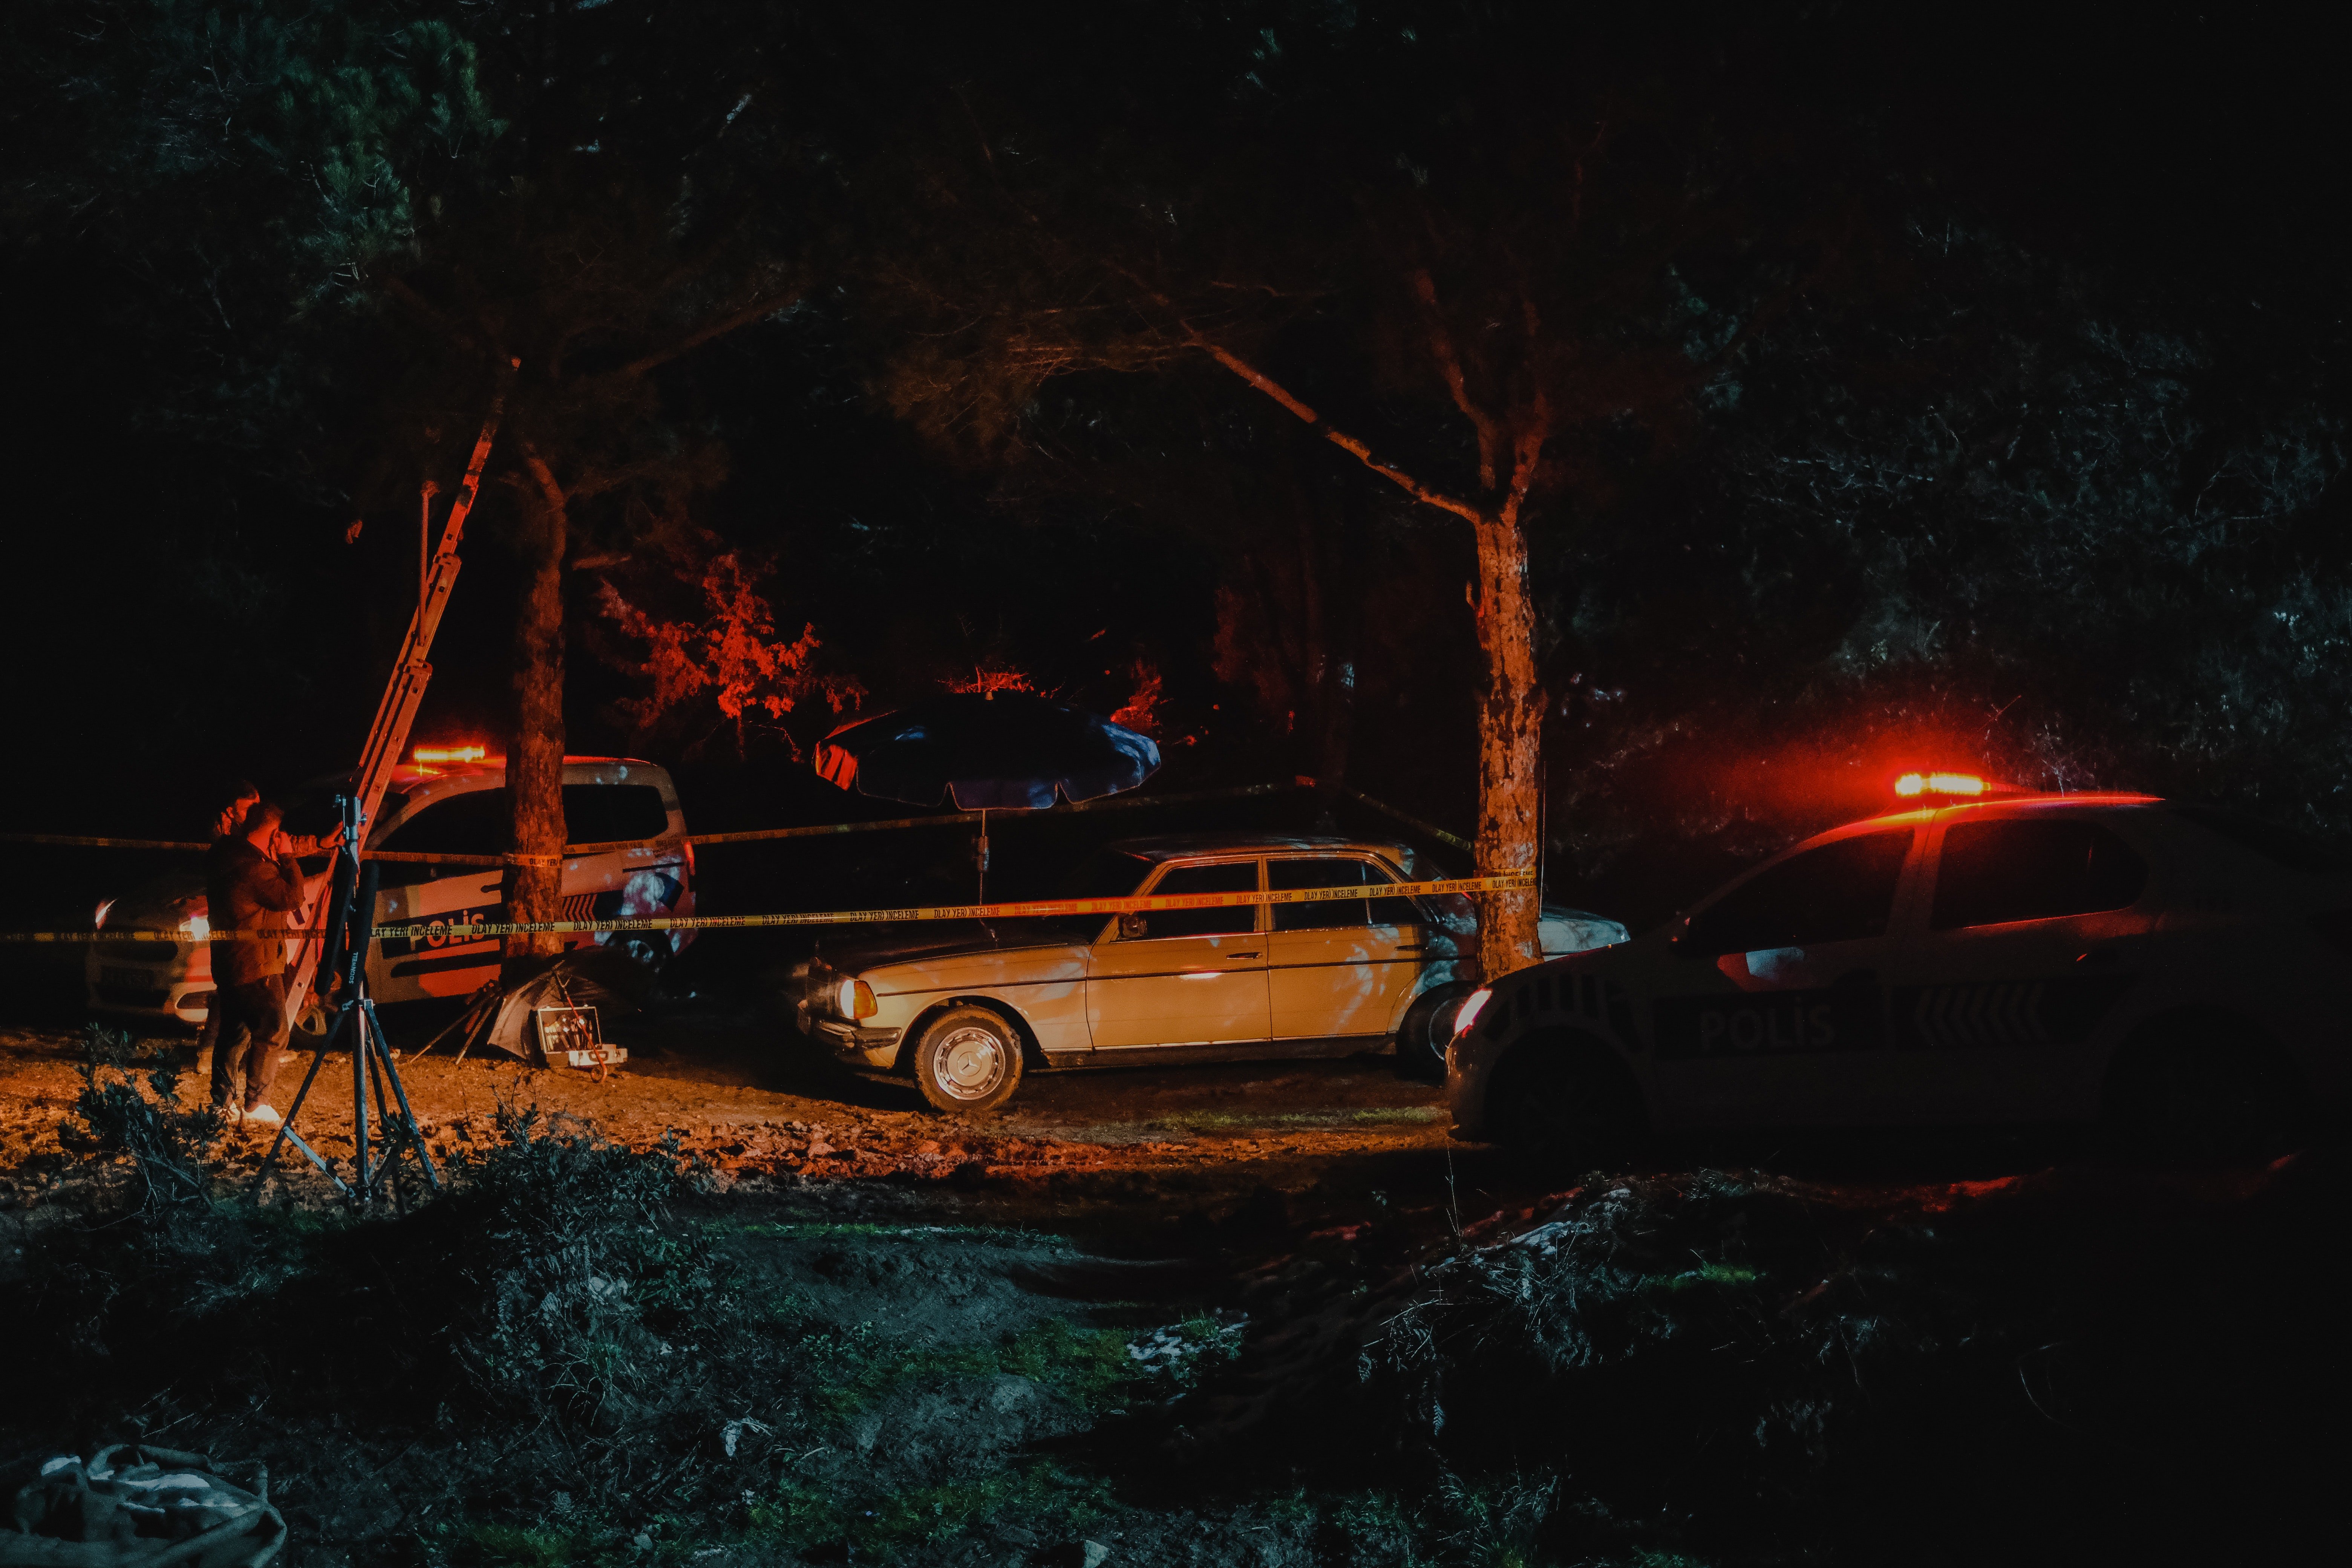 Adam's car crashed into a tree. | Source: Pexels